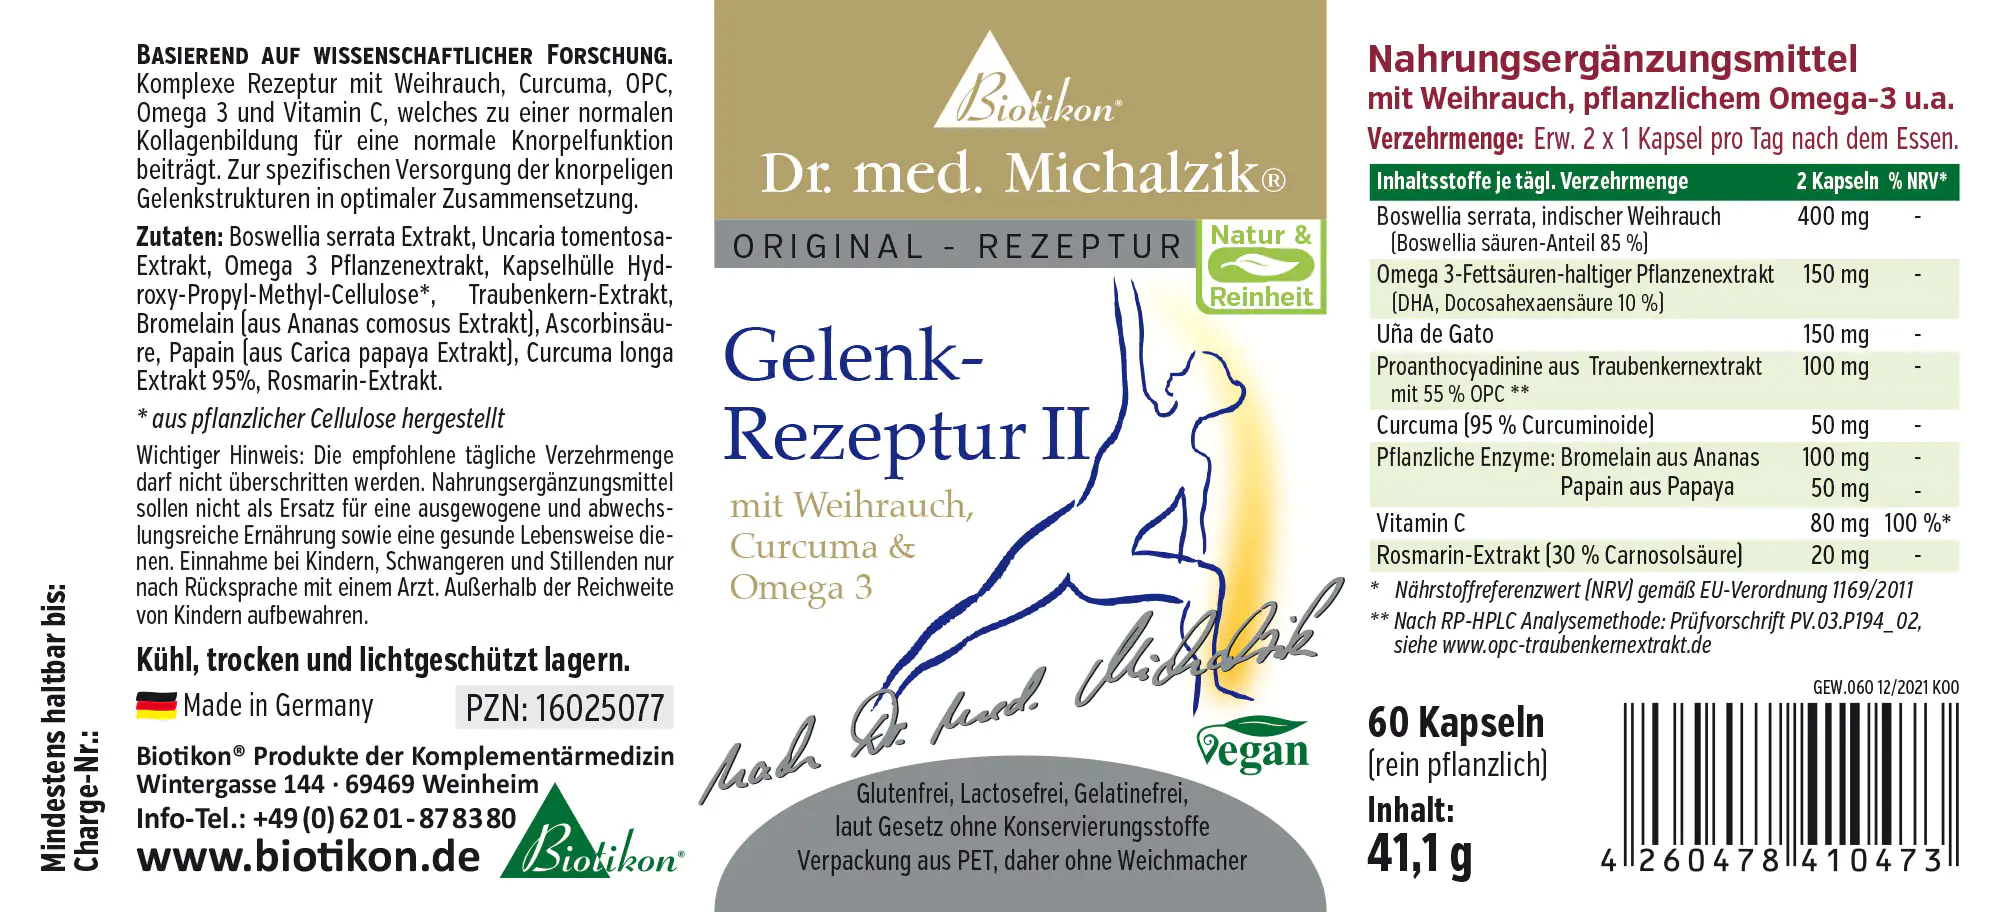 Gelenk-Rezeptur II mit Weihrauch